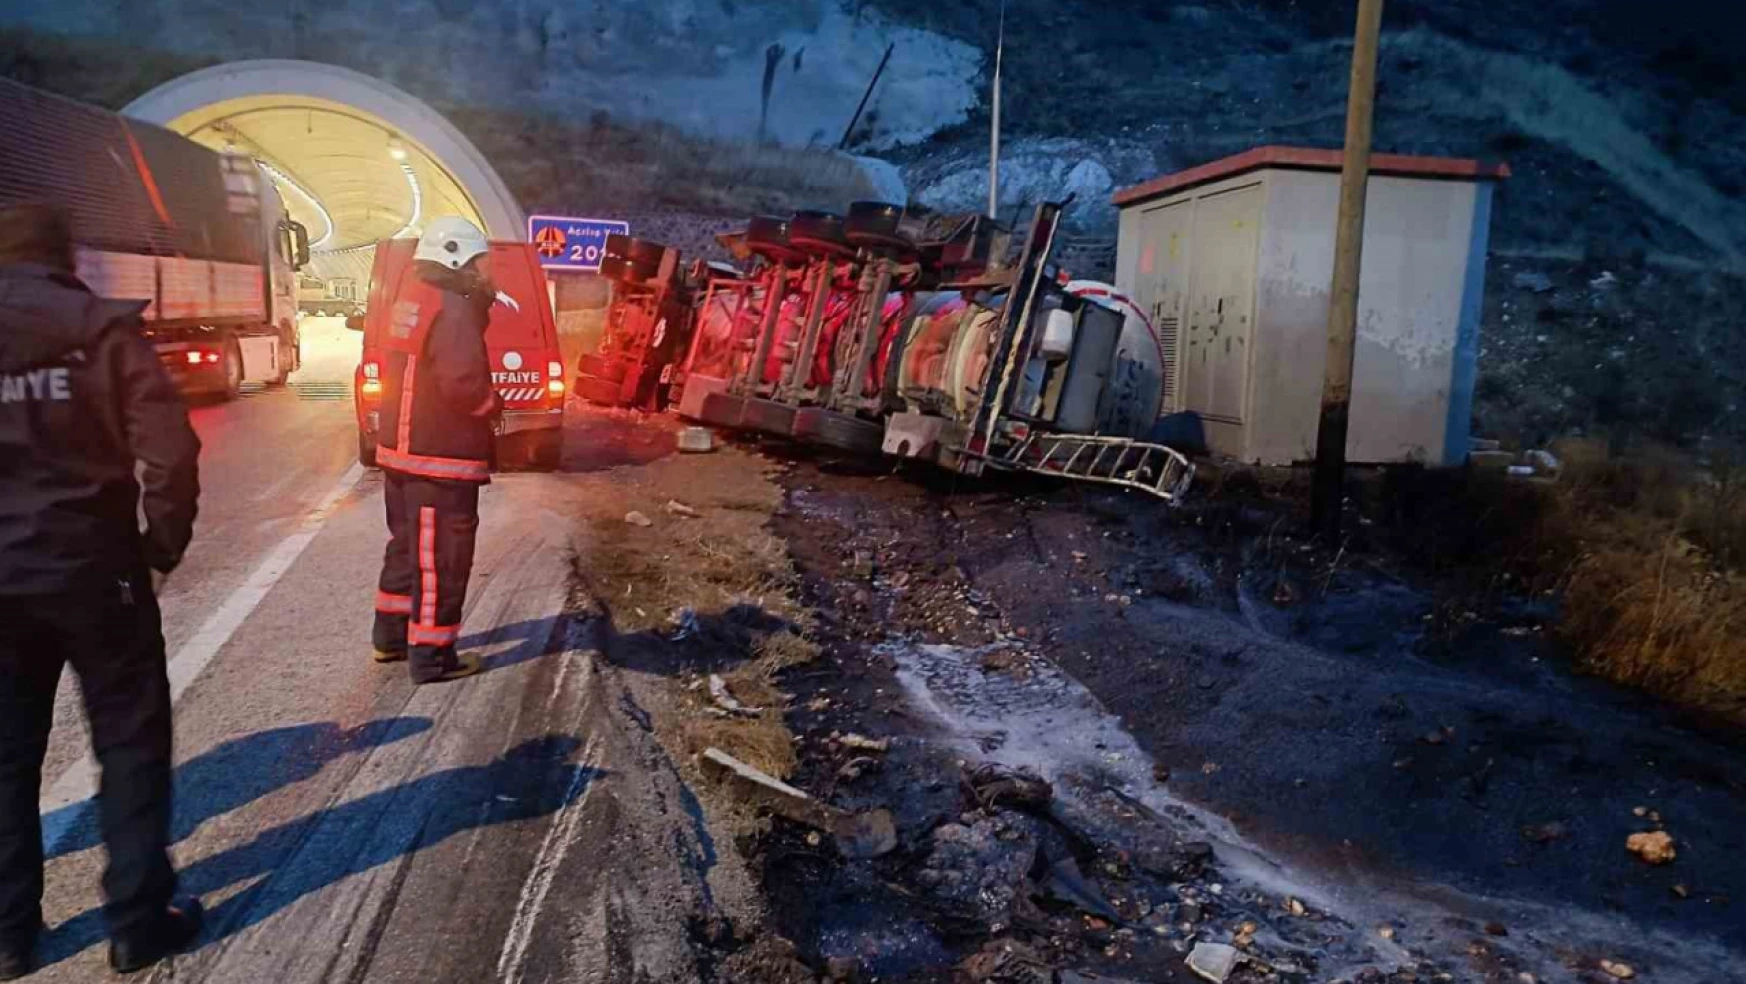 Malatya'da iki ayrı trafik kazasında 3 kişi yaralandı